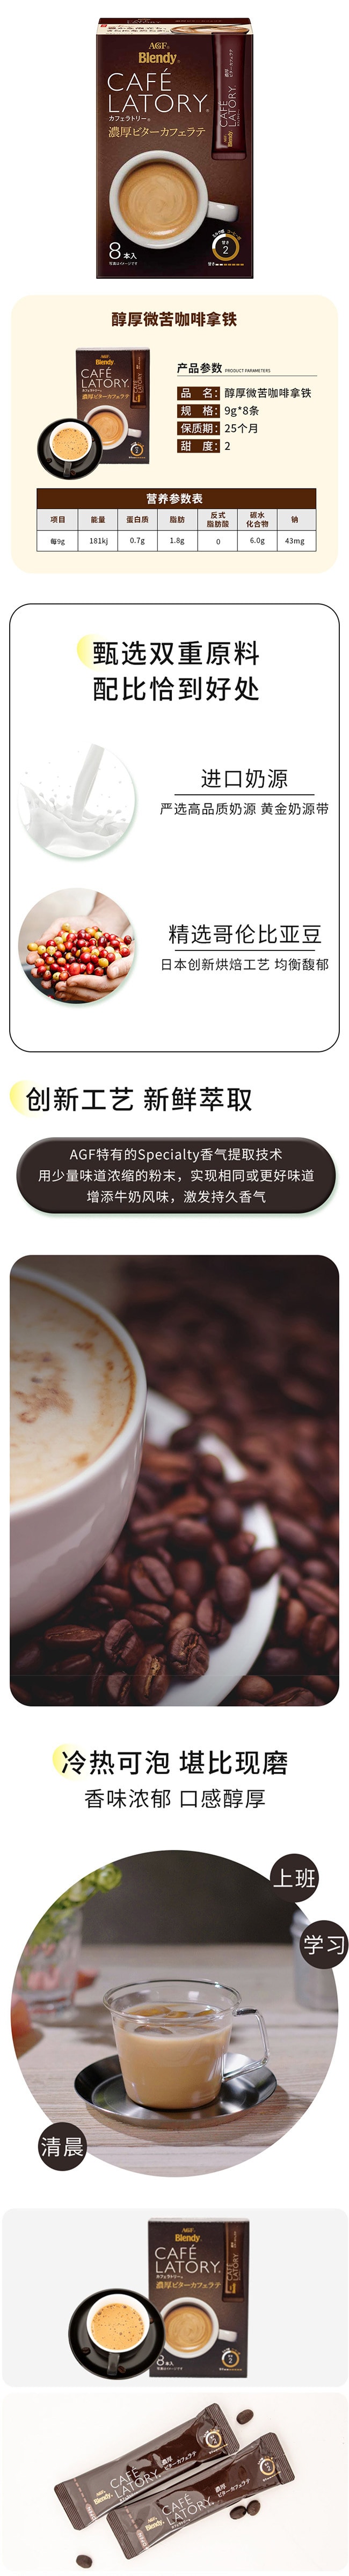 【日本直效郵件】AGF CAFE LATORY 醇厚微苦拿鐵咖啡 8條入